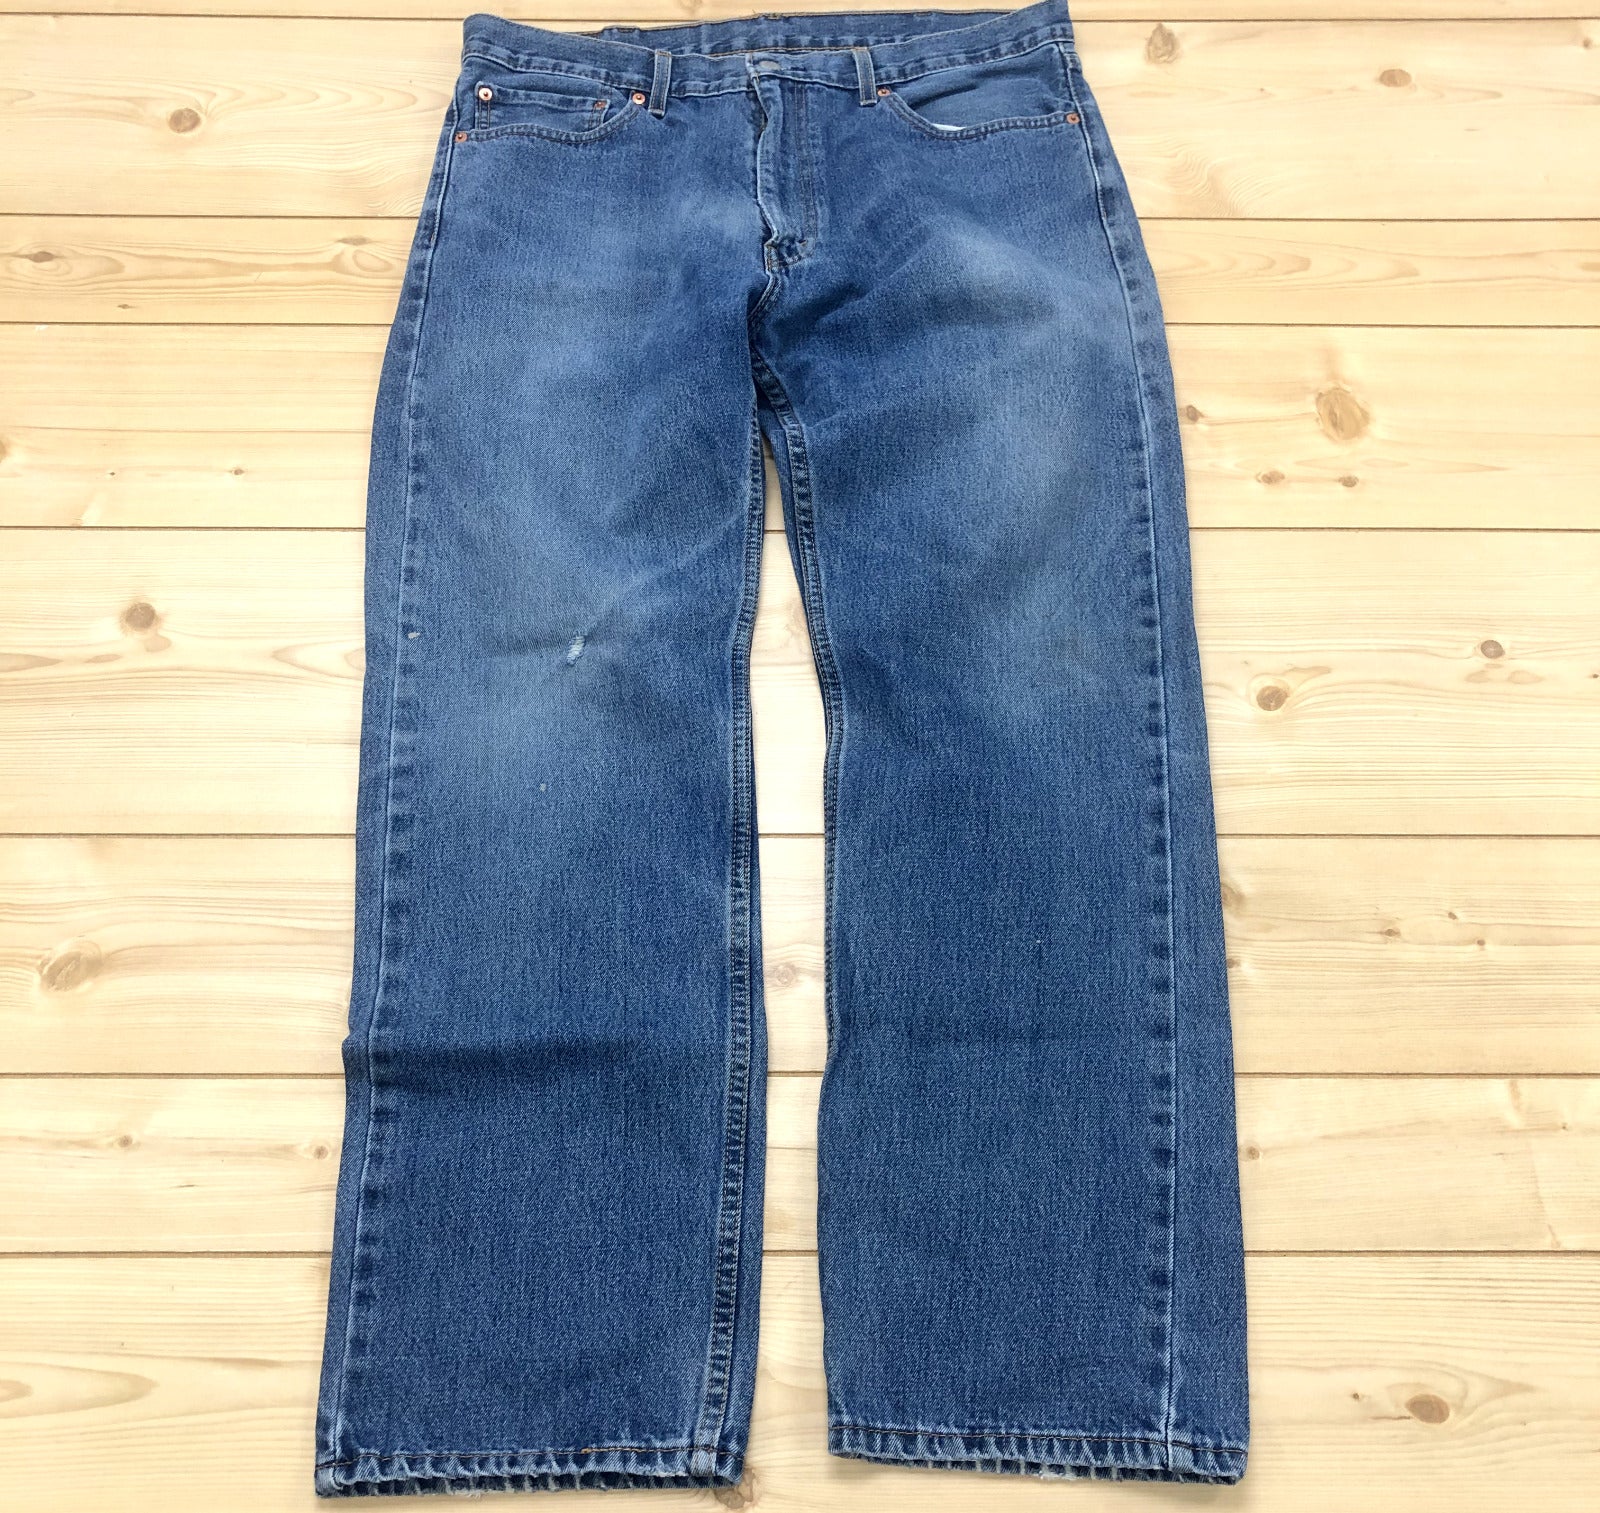 Levi Strauss 505 Blue Denim 5th Pocket Straight Jeans Adult Size 38W x 32L